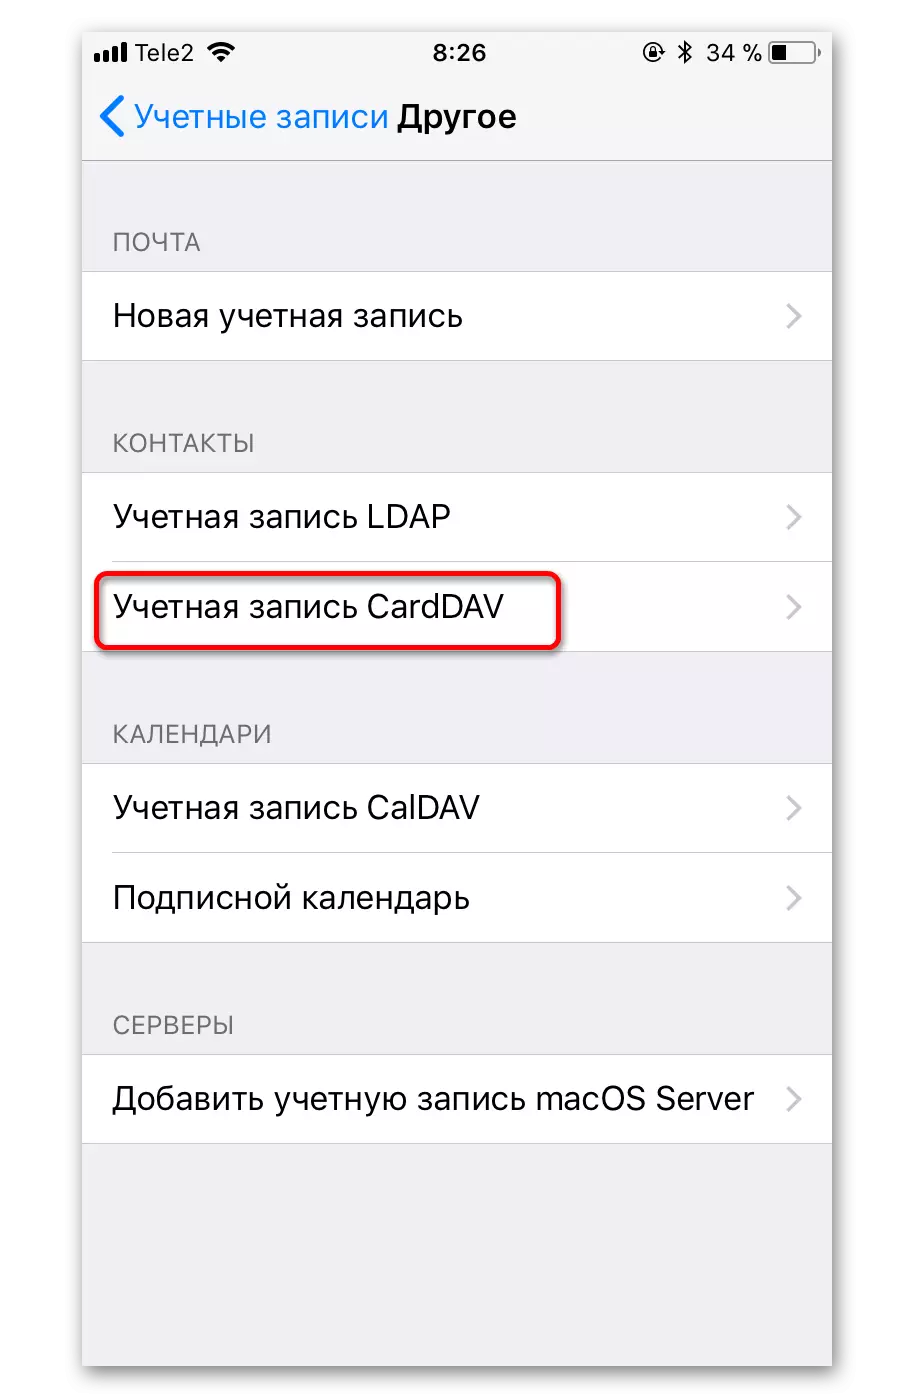 Erstellen von CardDAV-Kontokonto für Kontakte im iPhone